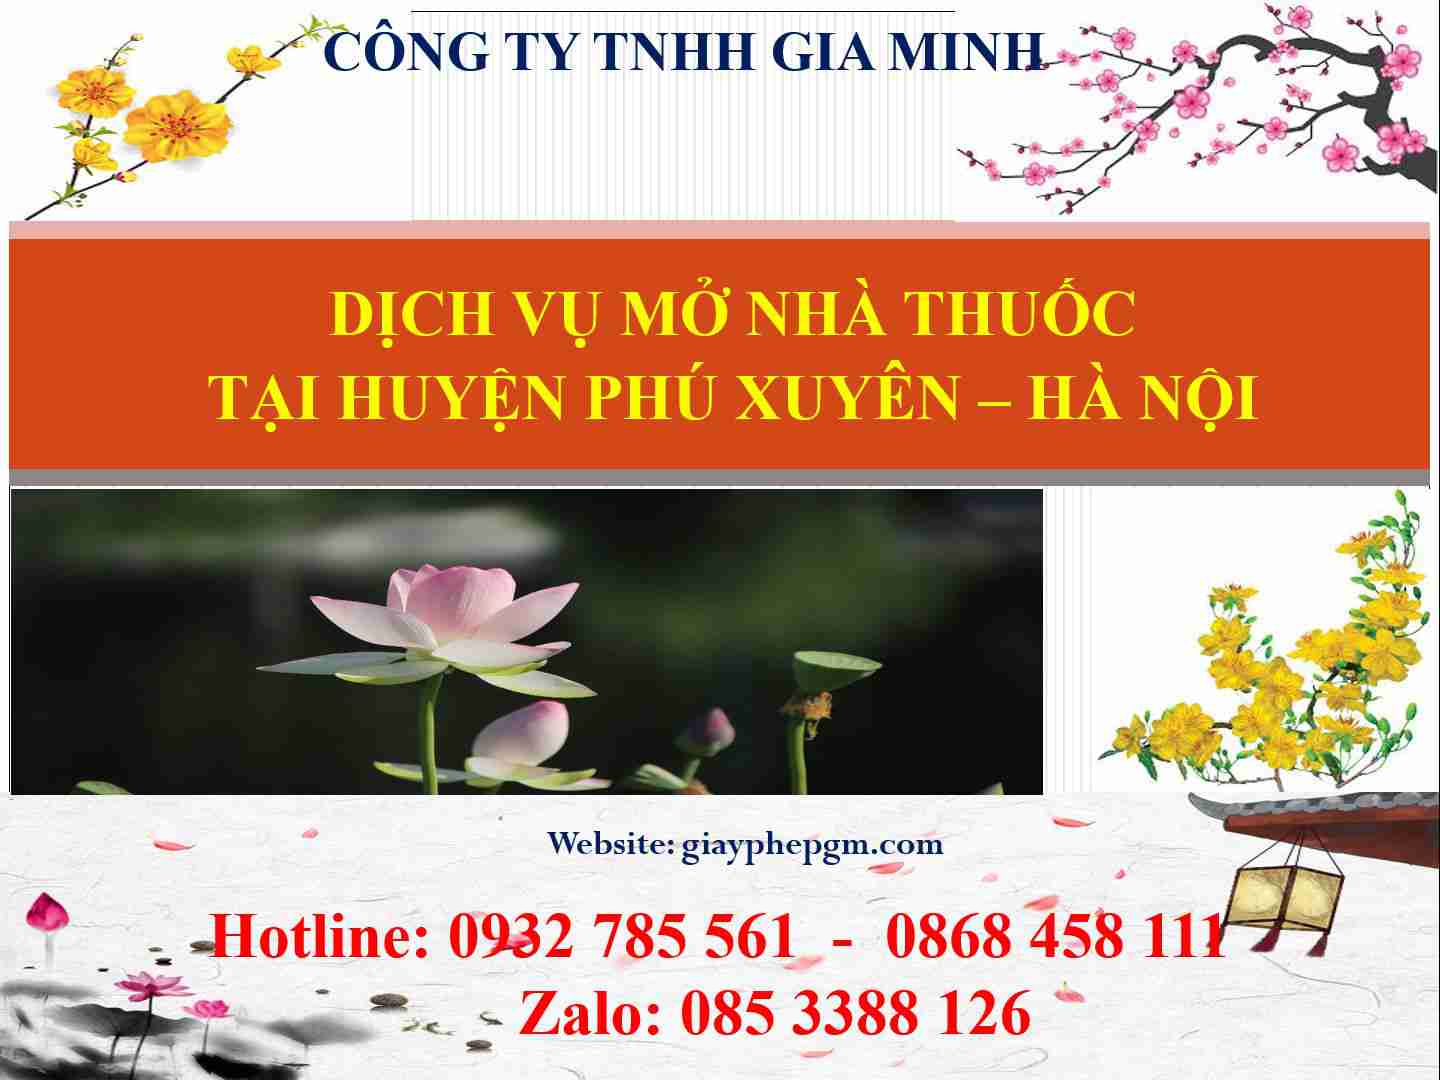 Dịch vụ mở nhà thuốc tại Huyện Phú Xuyên - Hà Nội